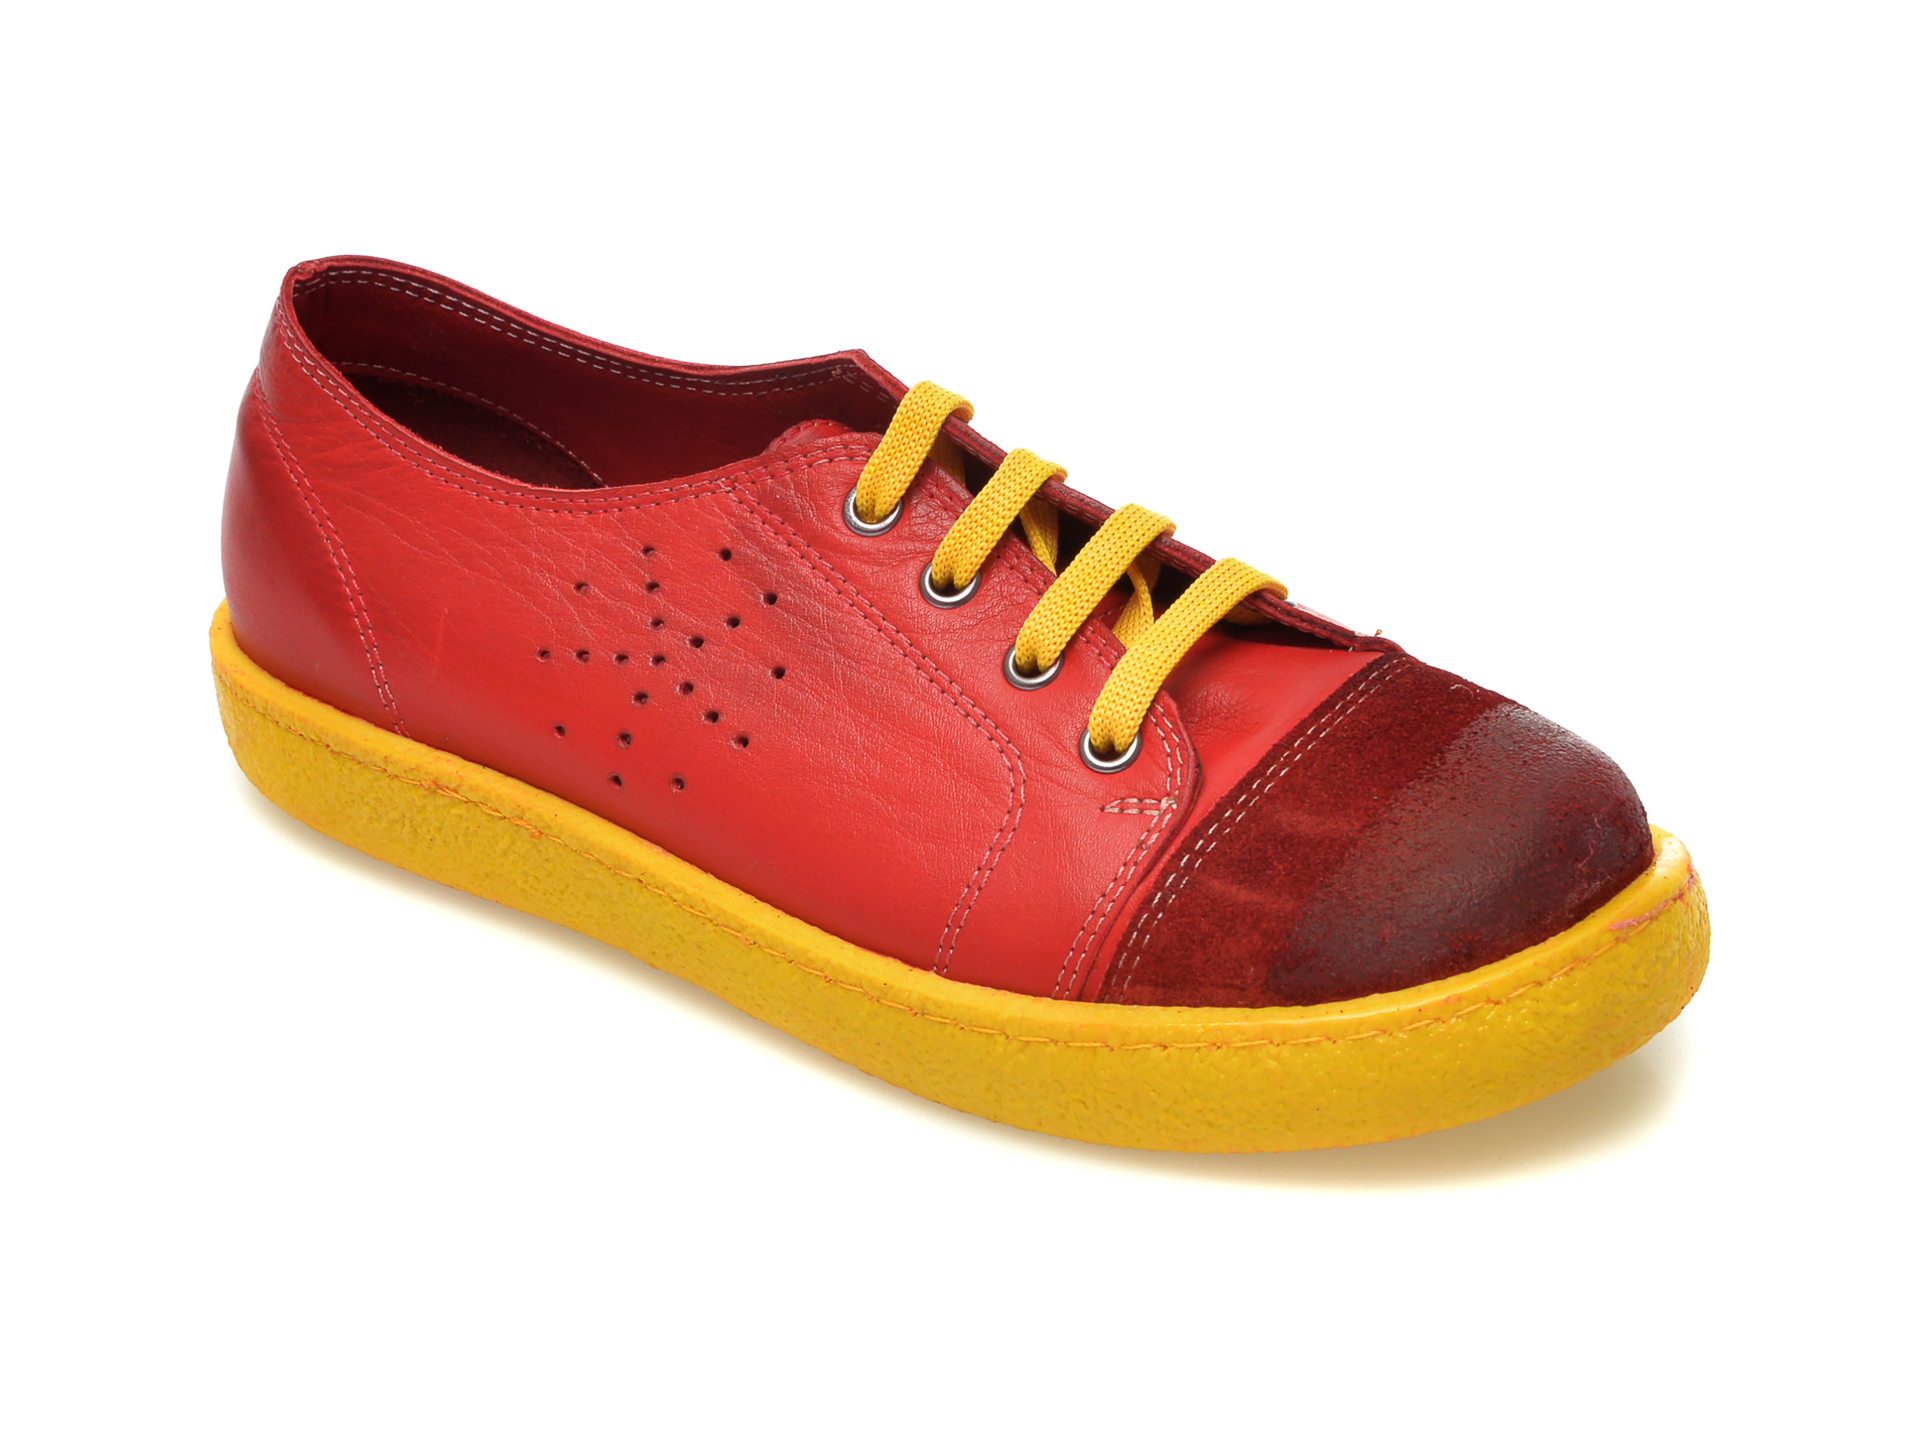 Pantofi FLAVIA PASSINI rosii, 20716, din piele naturala